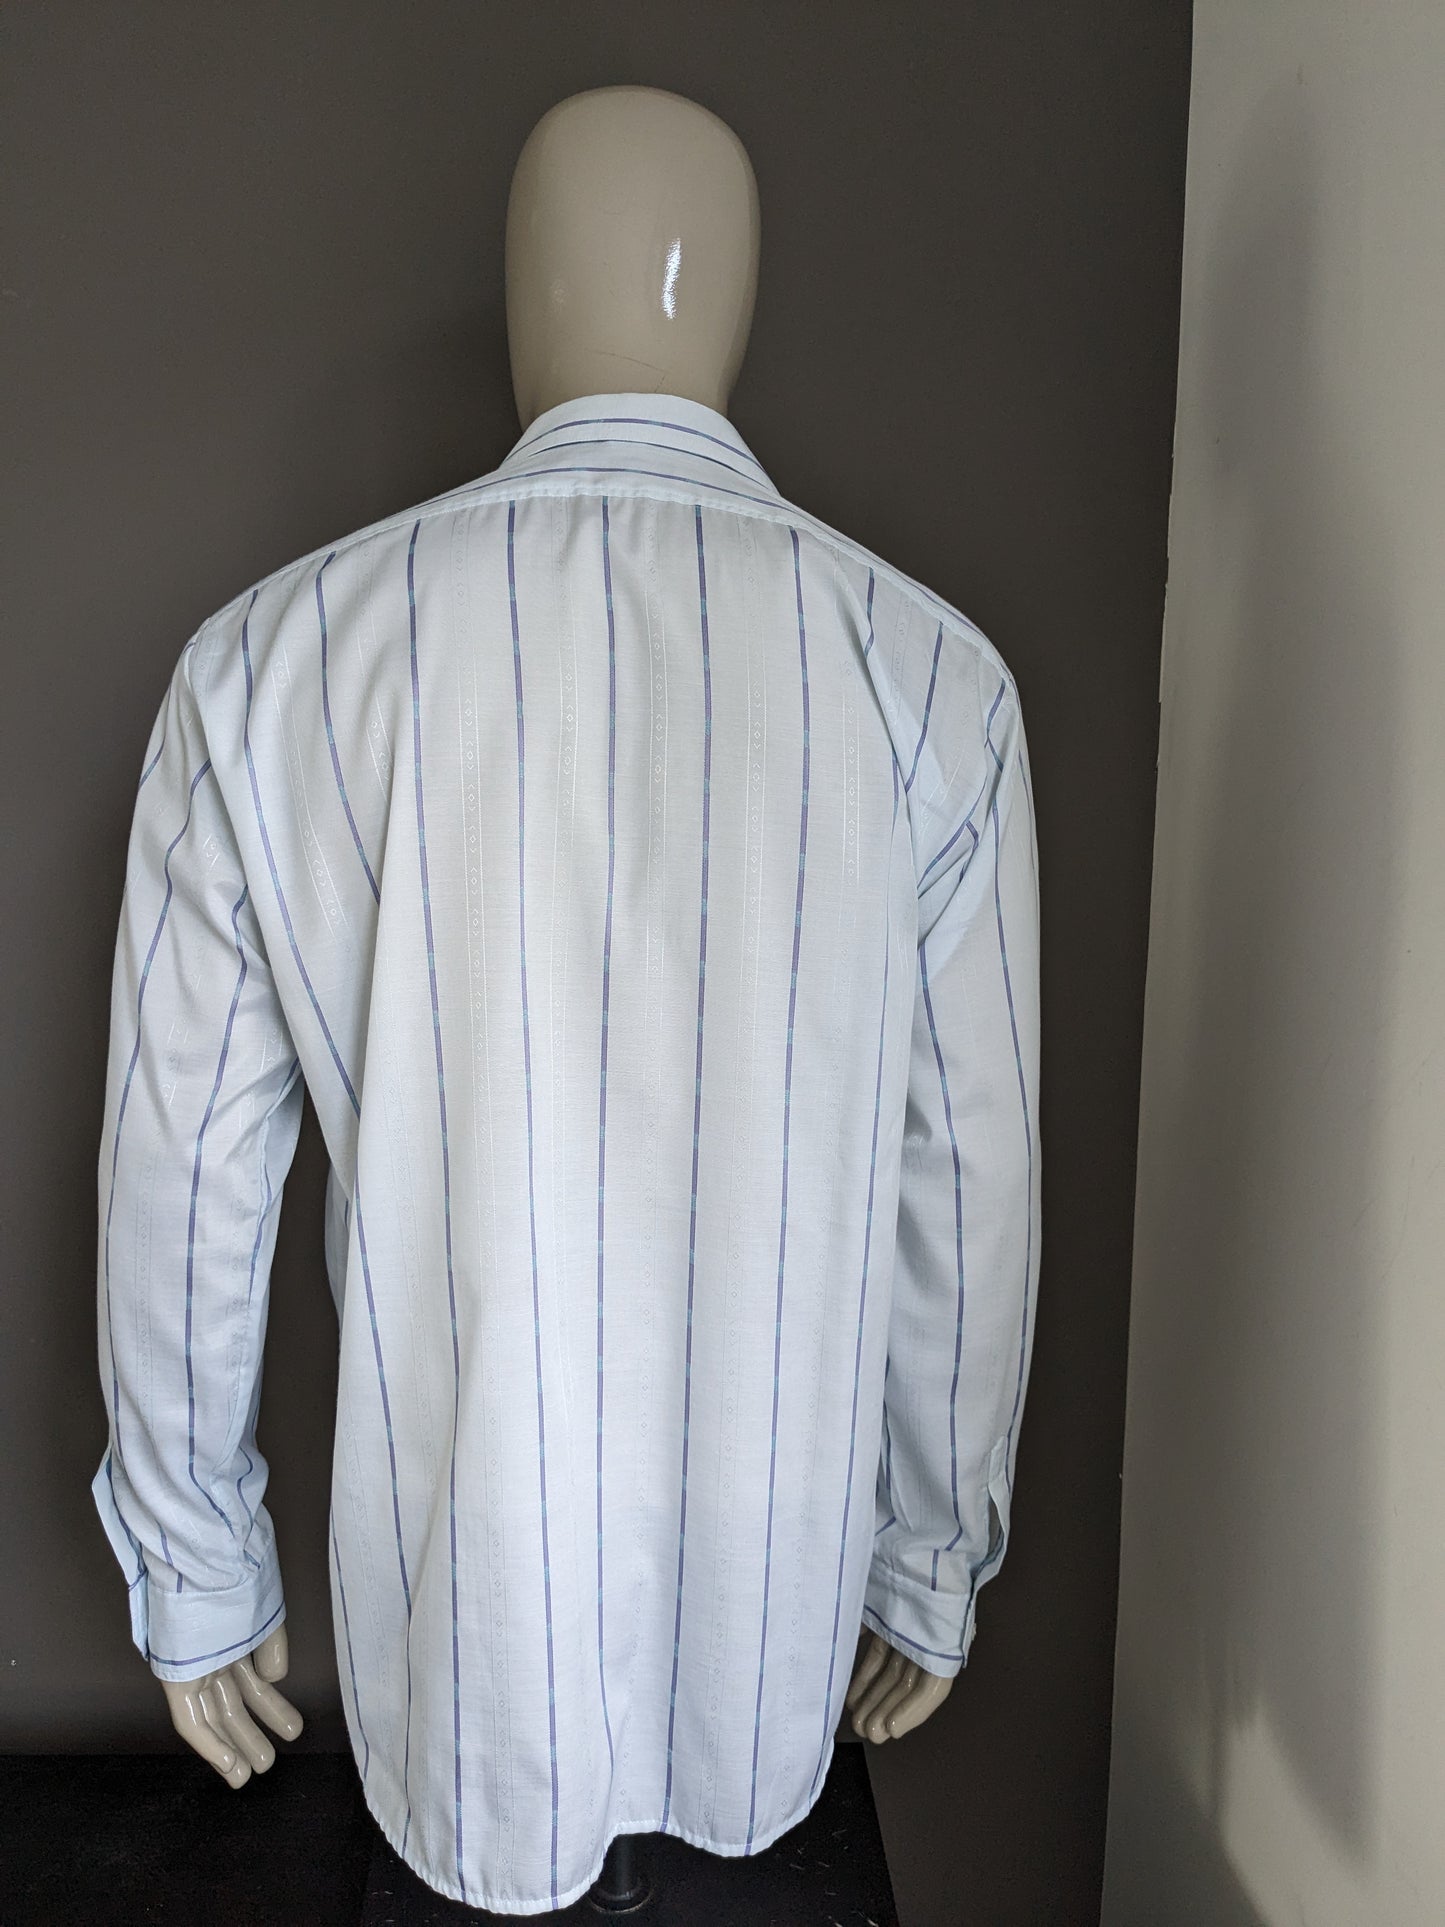 Vintage Jacqueline de Tancot 70's shirt with point collar. Light blue motif. Size XL / XXL-2XL.